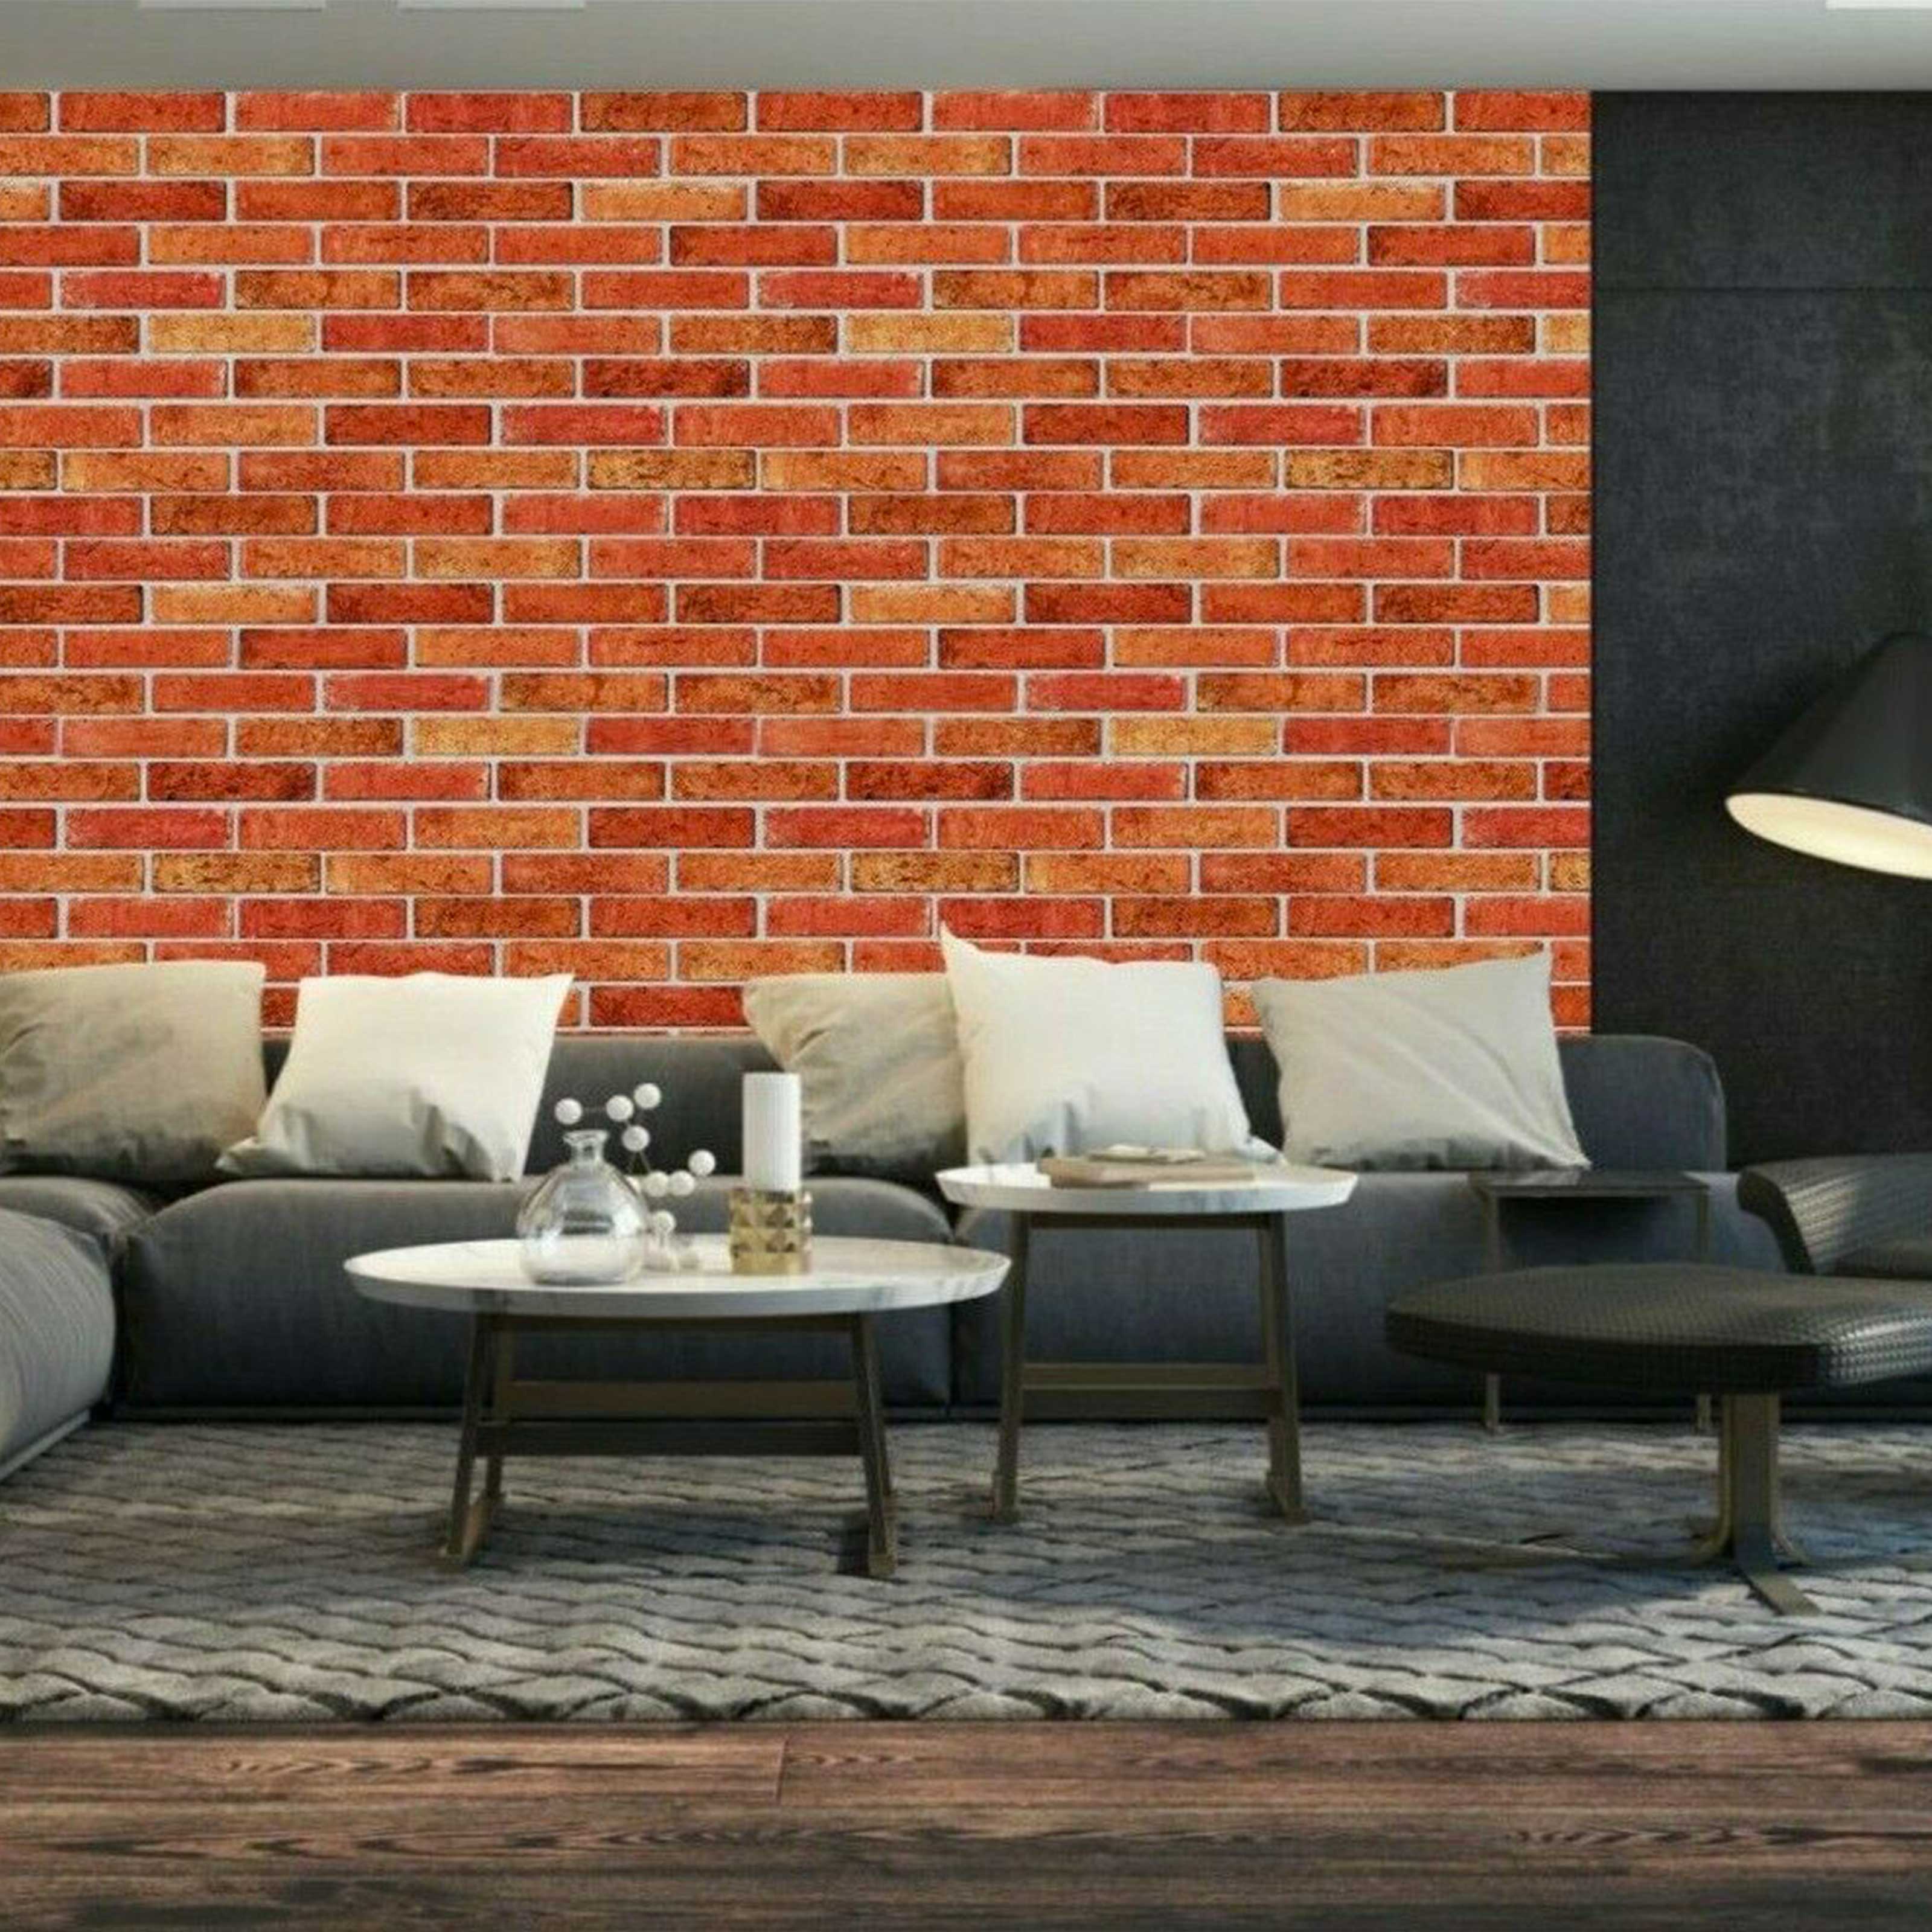 Pannelli 3D Rivestimento a parete in PVC effetto MATTONI COTTO Realistici e isolanti. - Eternal Parquet